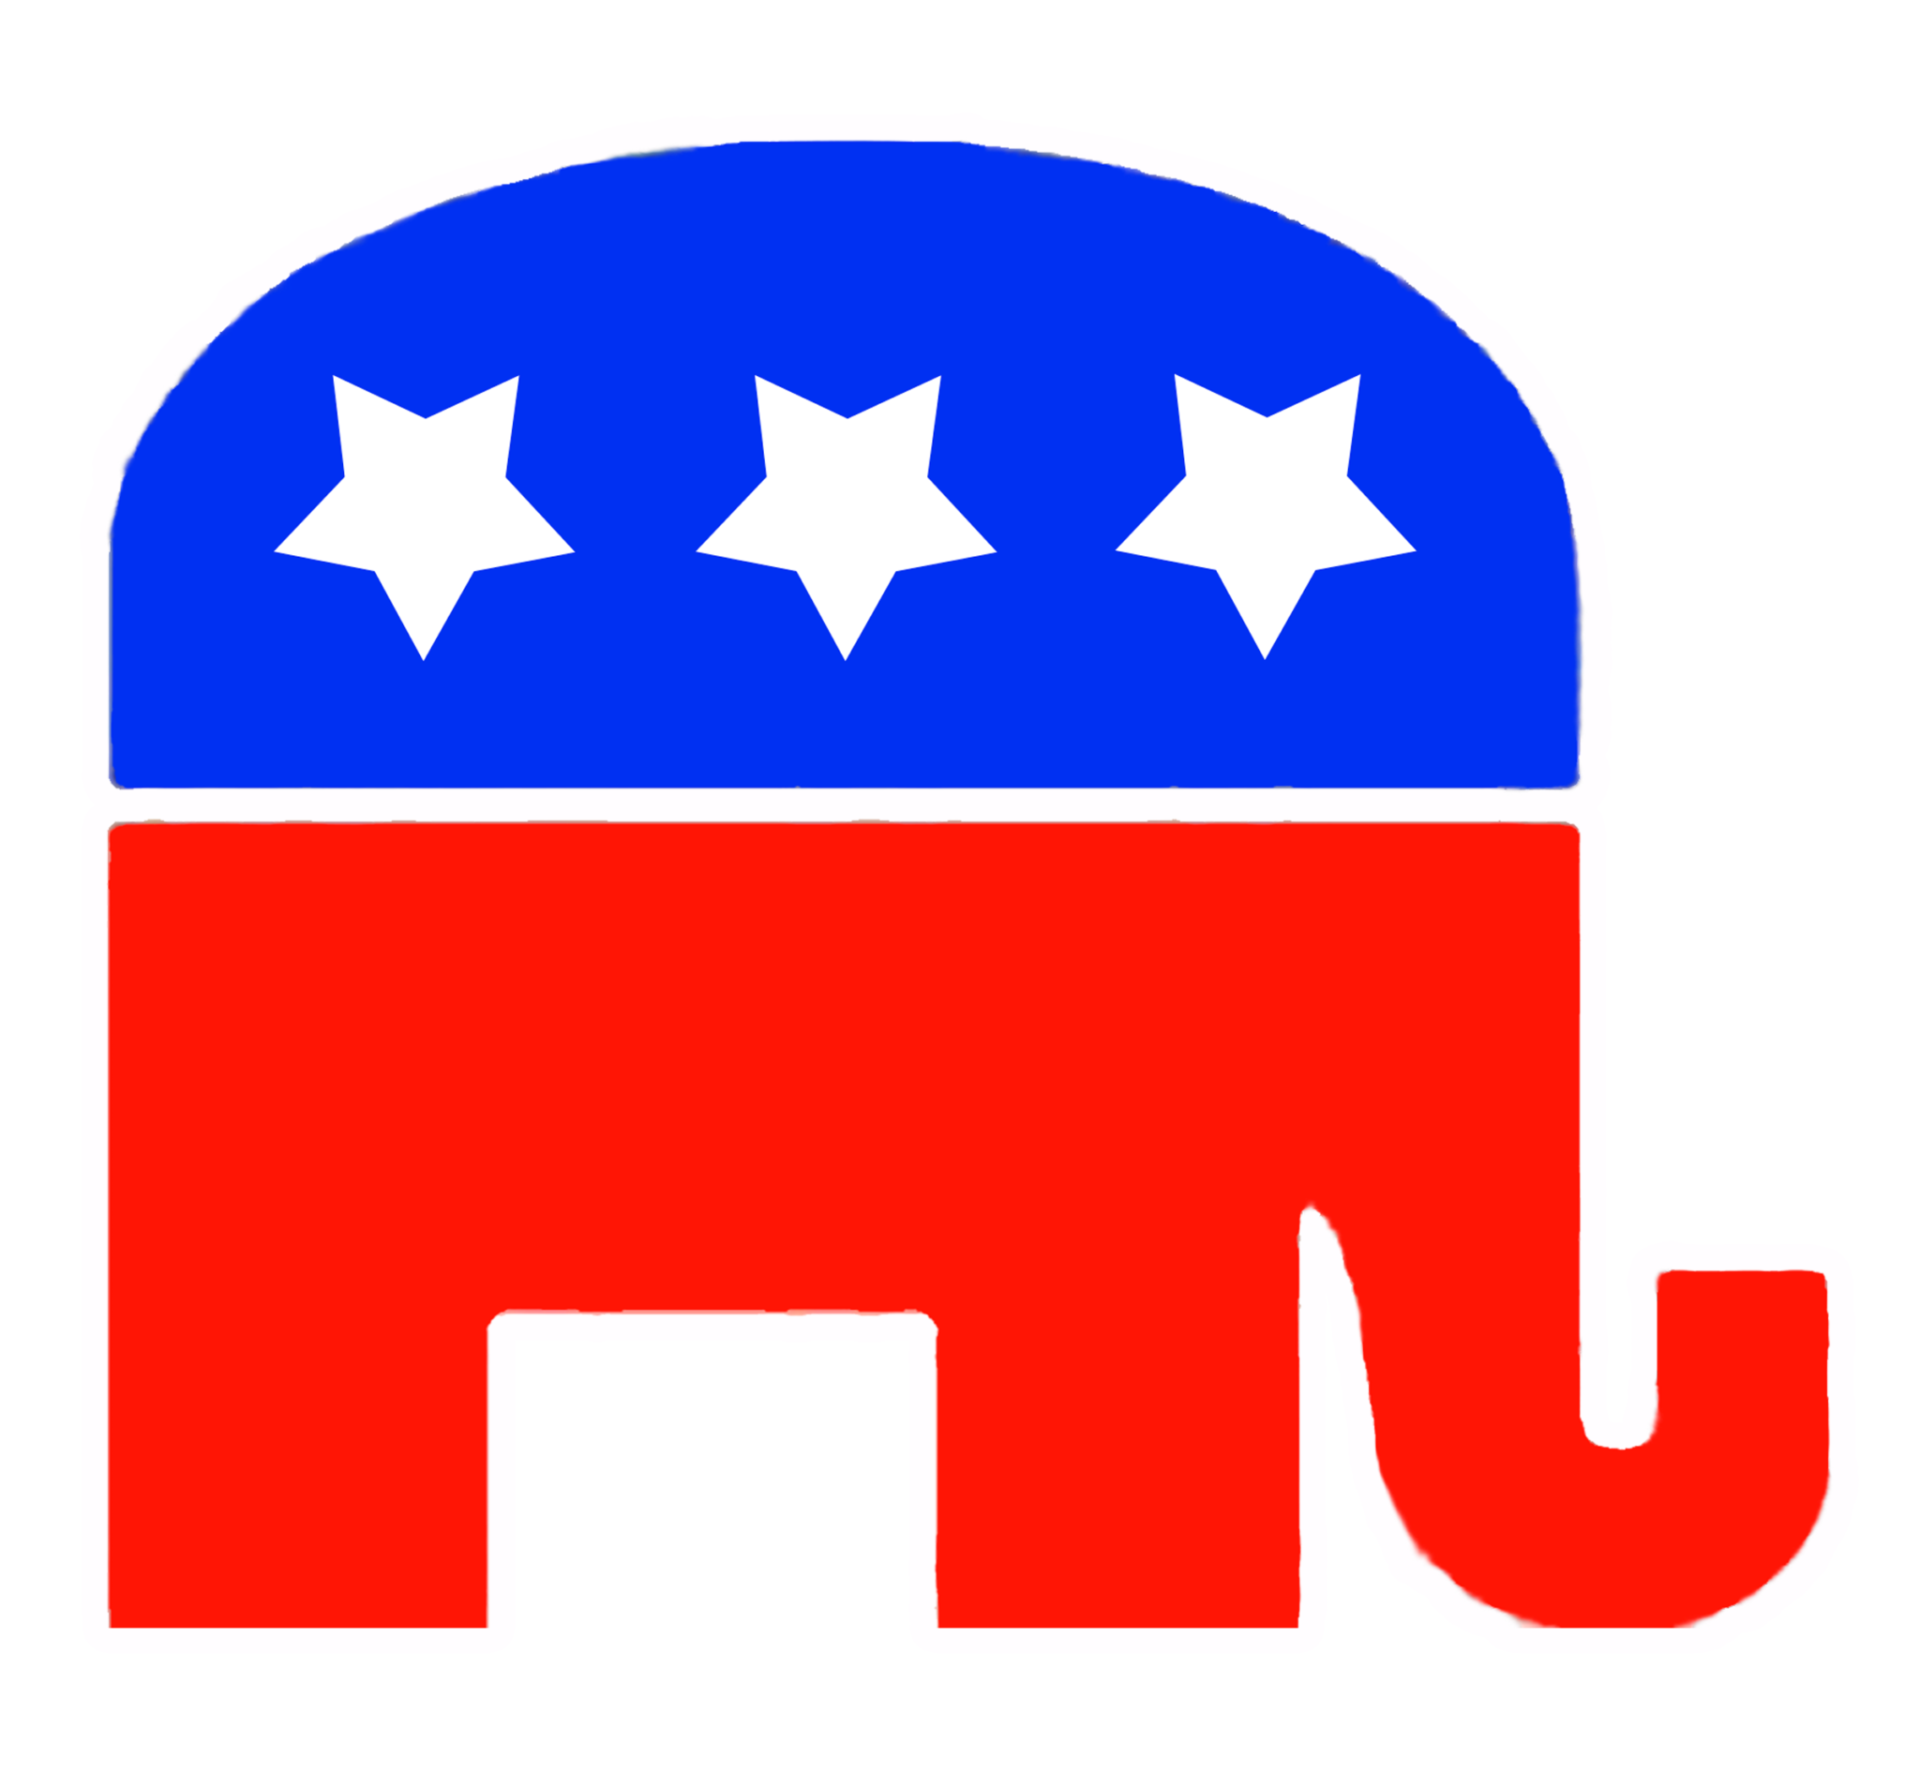 political logo ideas 3